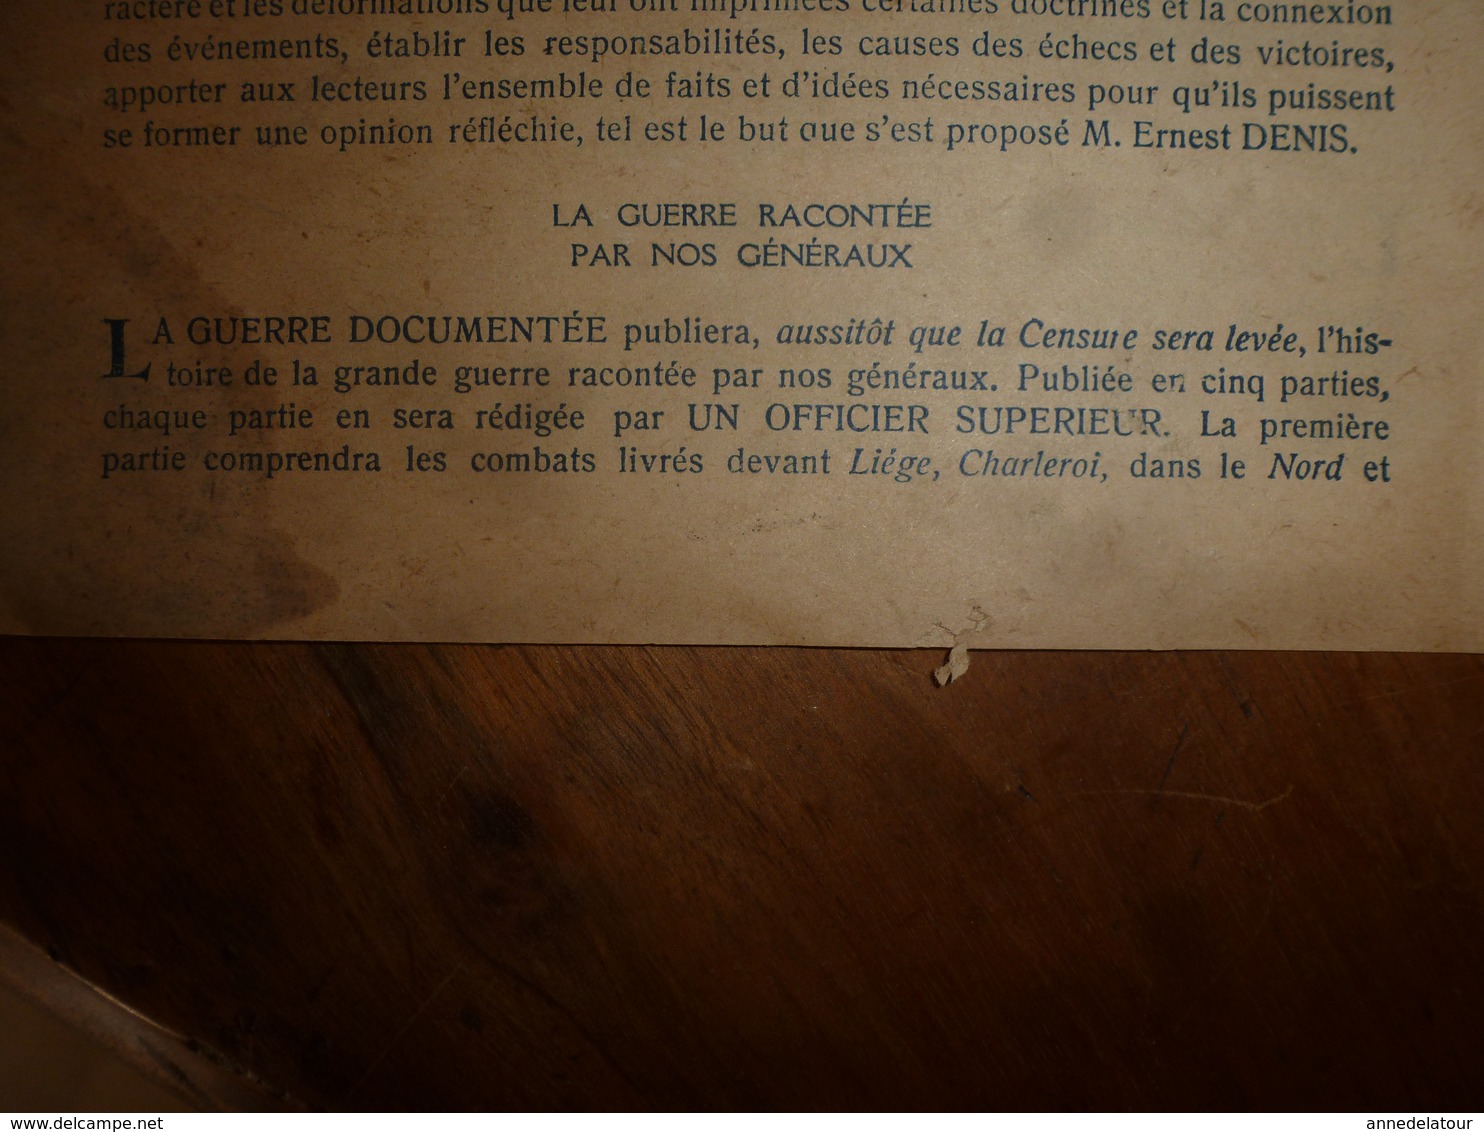 1914-1918 LA GUERRE DOCUMENTÉE -----> Annonce Informative De Cette Parution - Français